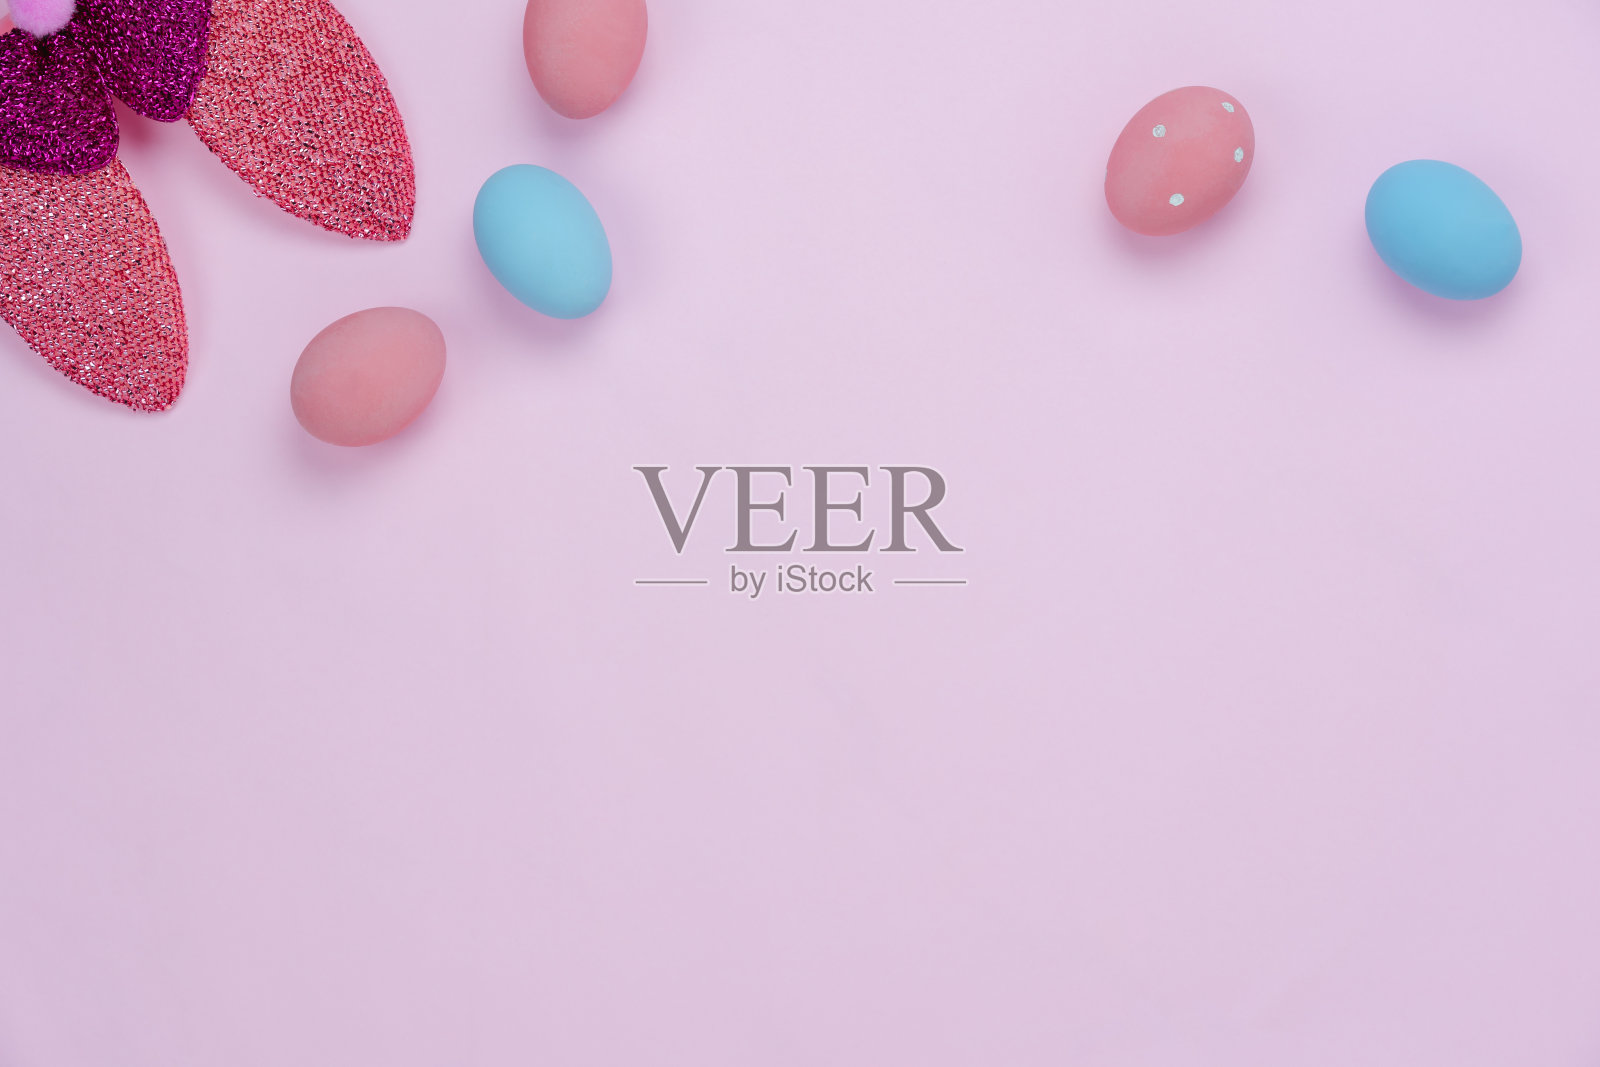 桌面视图拍摄的装饰复活节节日快乐的背景概念。在现代乡村的粉红色纸上，平生着五颜六色的蛋和可爱的兔子耳朵。空白空间的创意设计模型和模板。照片摄影图片